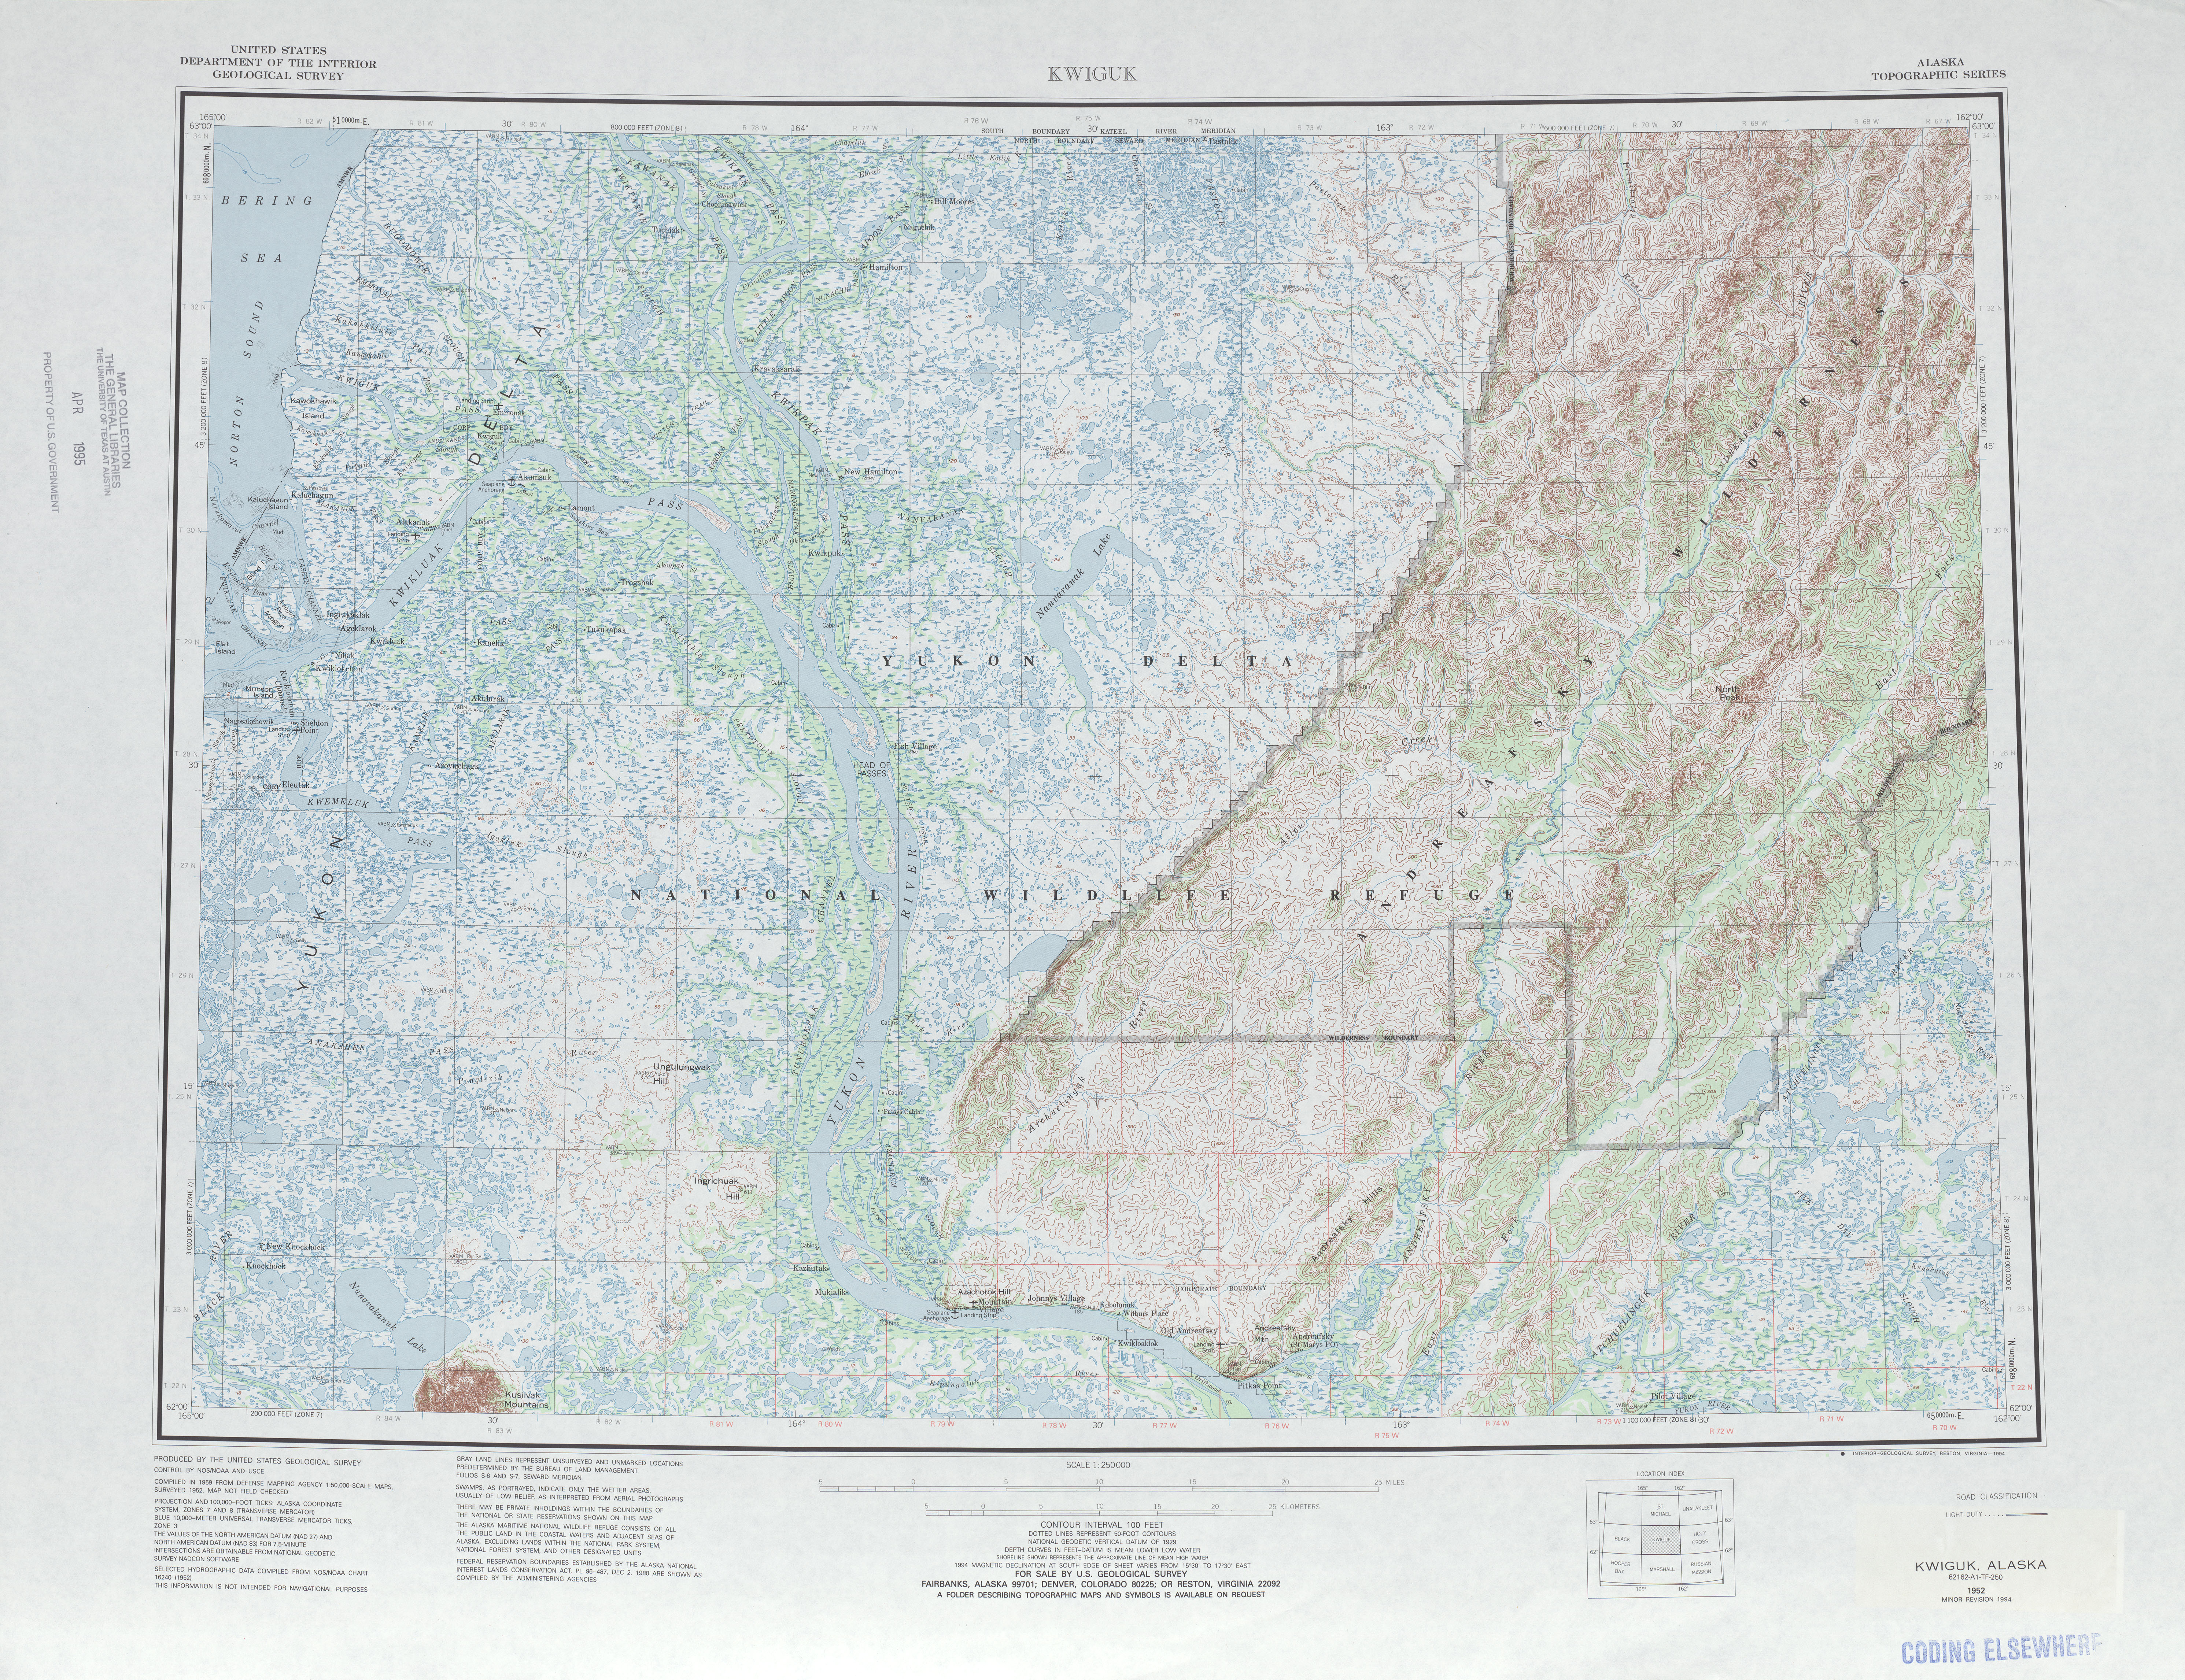 Hoja Kwiguk del Mapa Topográfico de los Estados Unidos 1994